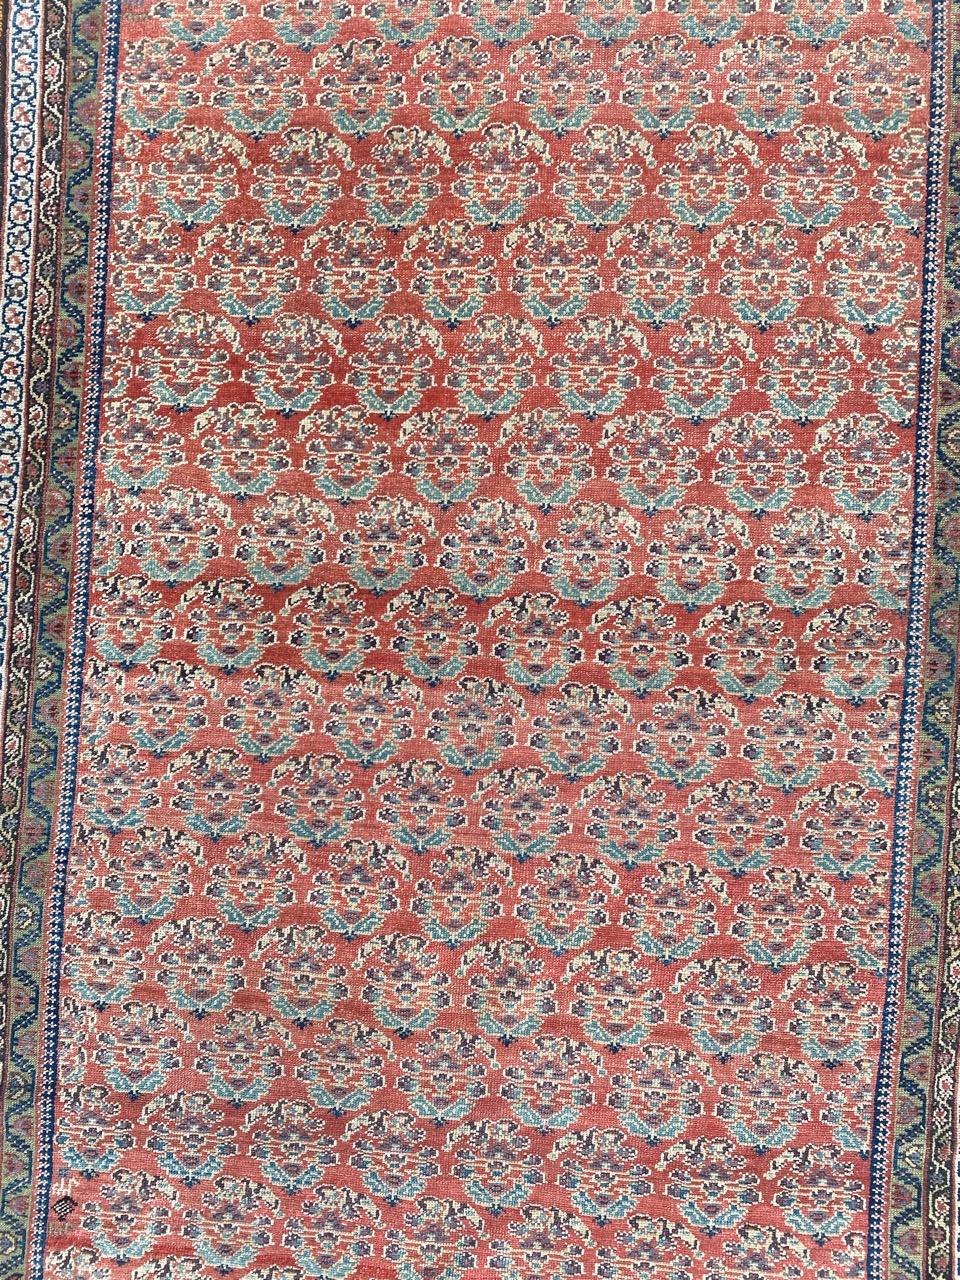 Très joli tapis Malayer de la fin du 19ème siècle avec un joli design botteh et de belles couleurs naturelles, entièrement et finement noué à la main avec du velours de laine sur une base de coton.

✨✨✨
